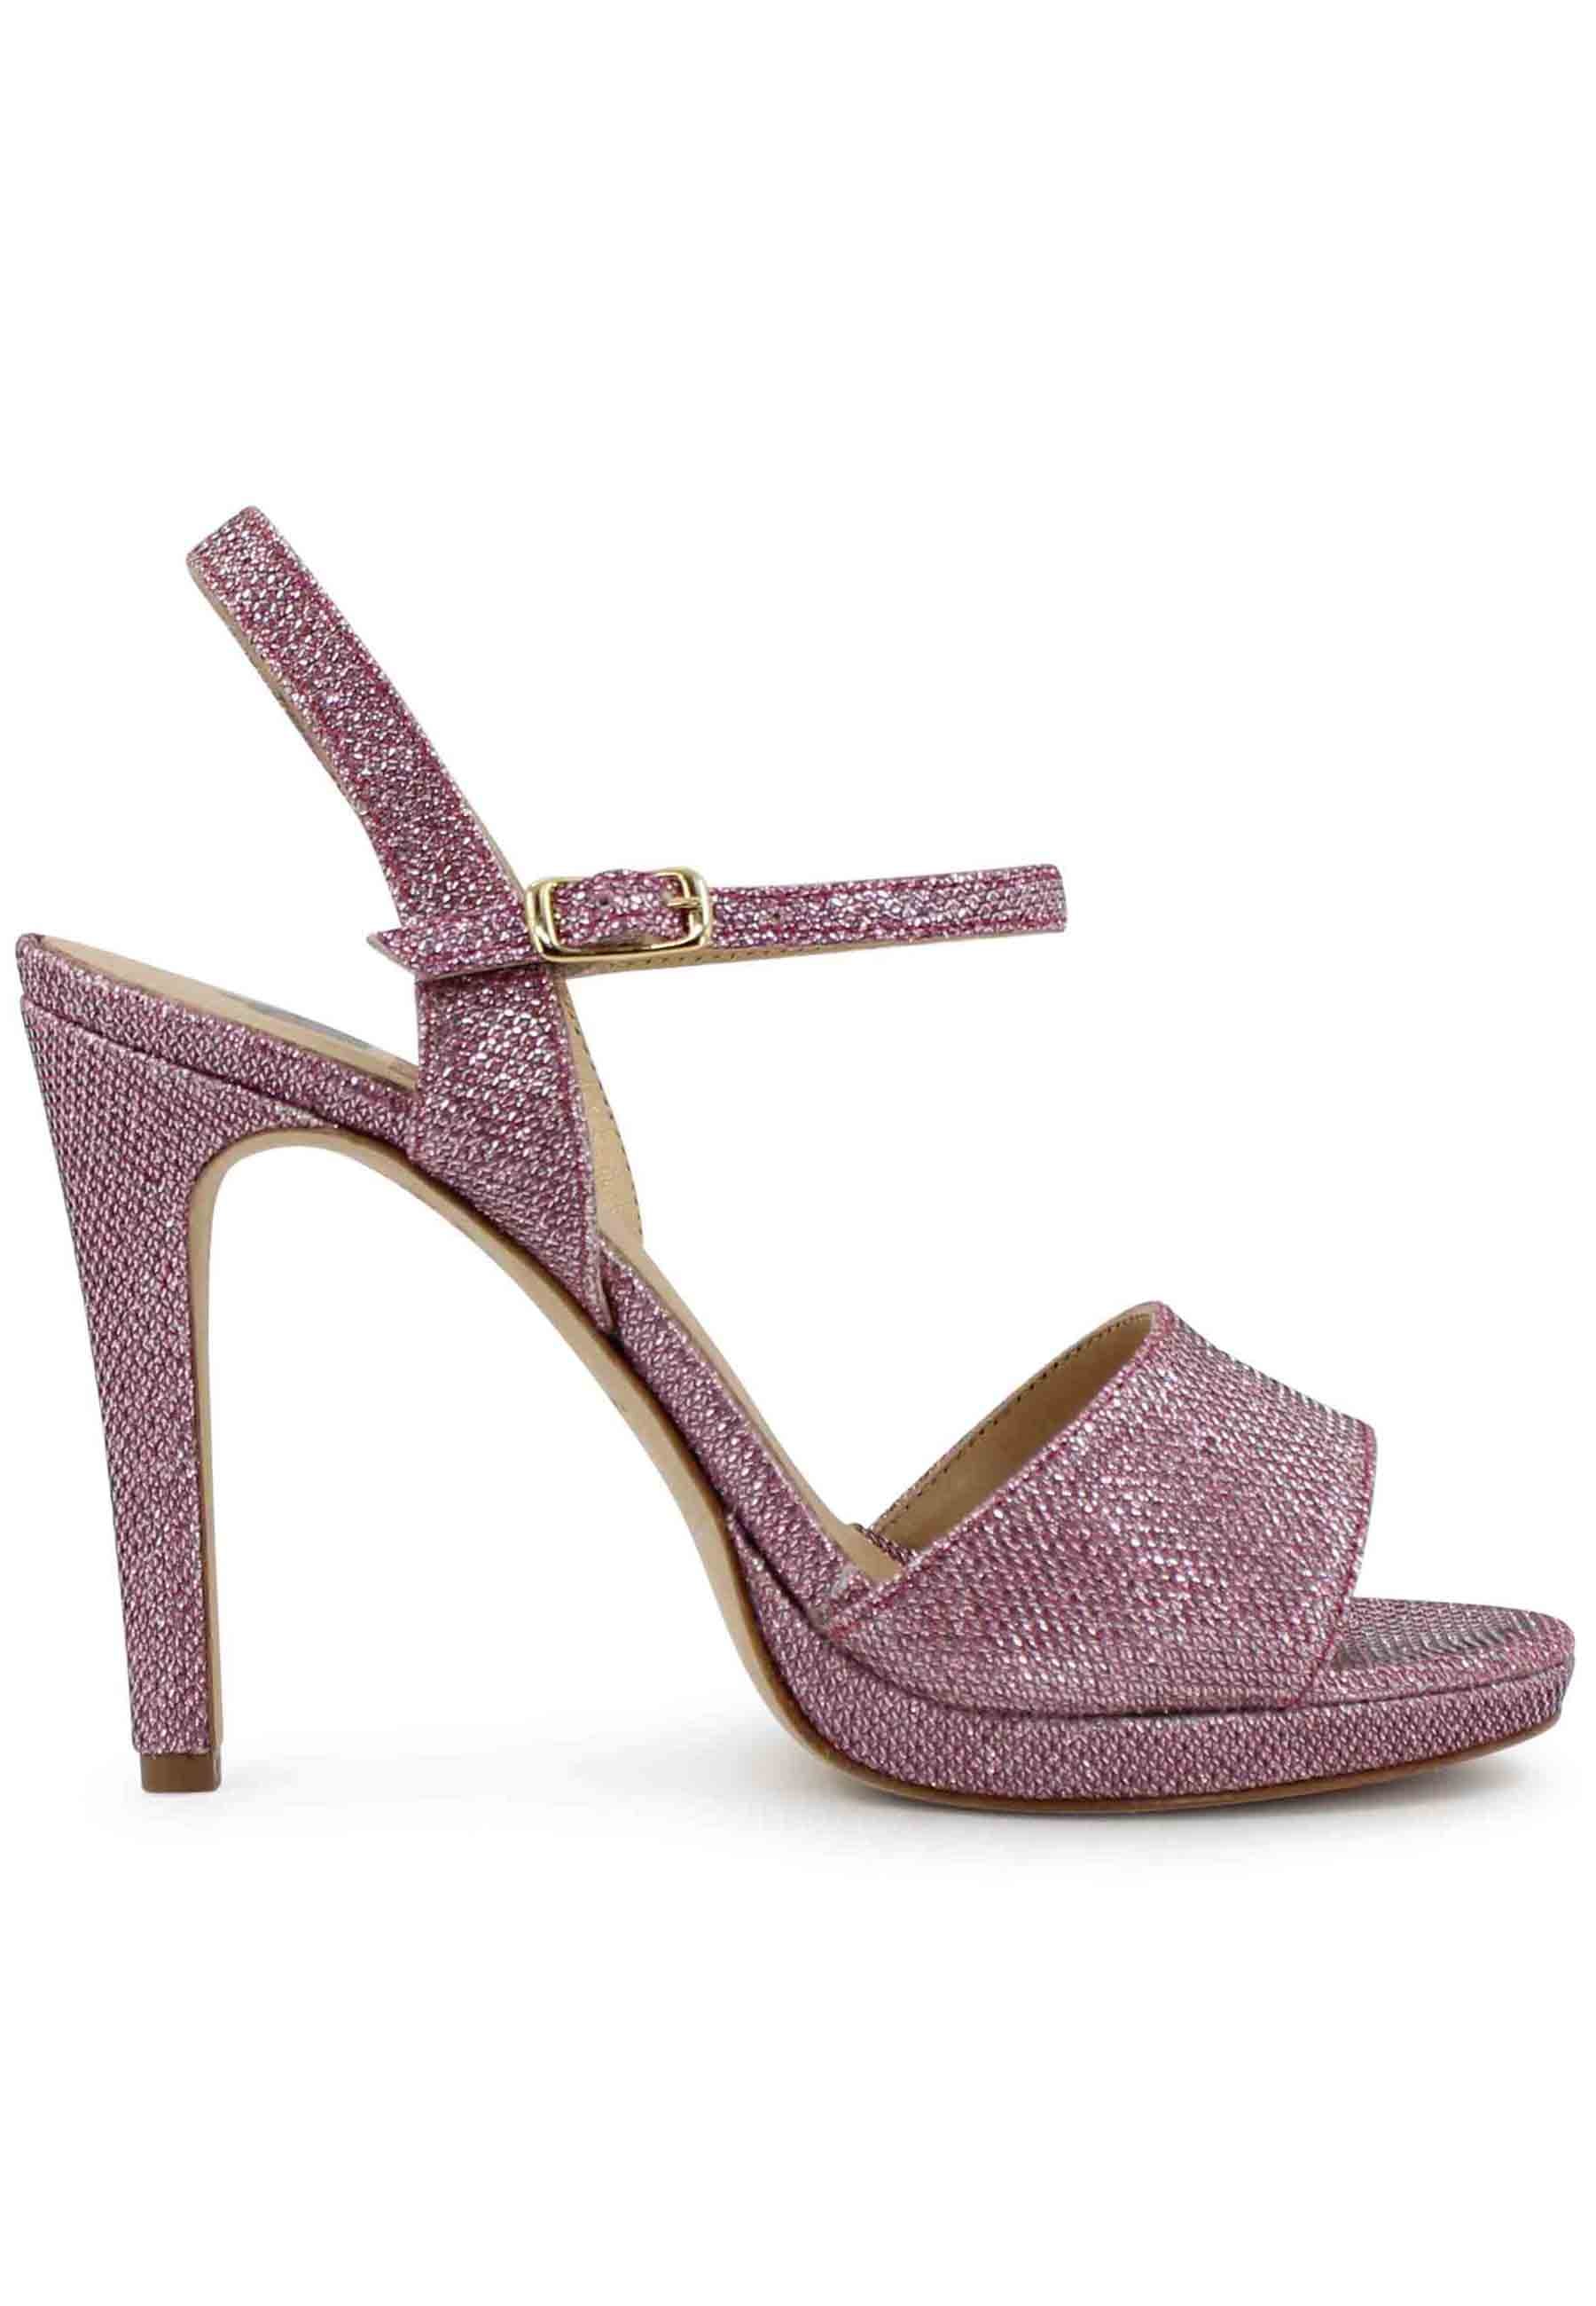 Women's pink glitter sandals with high stiletto heel